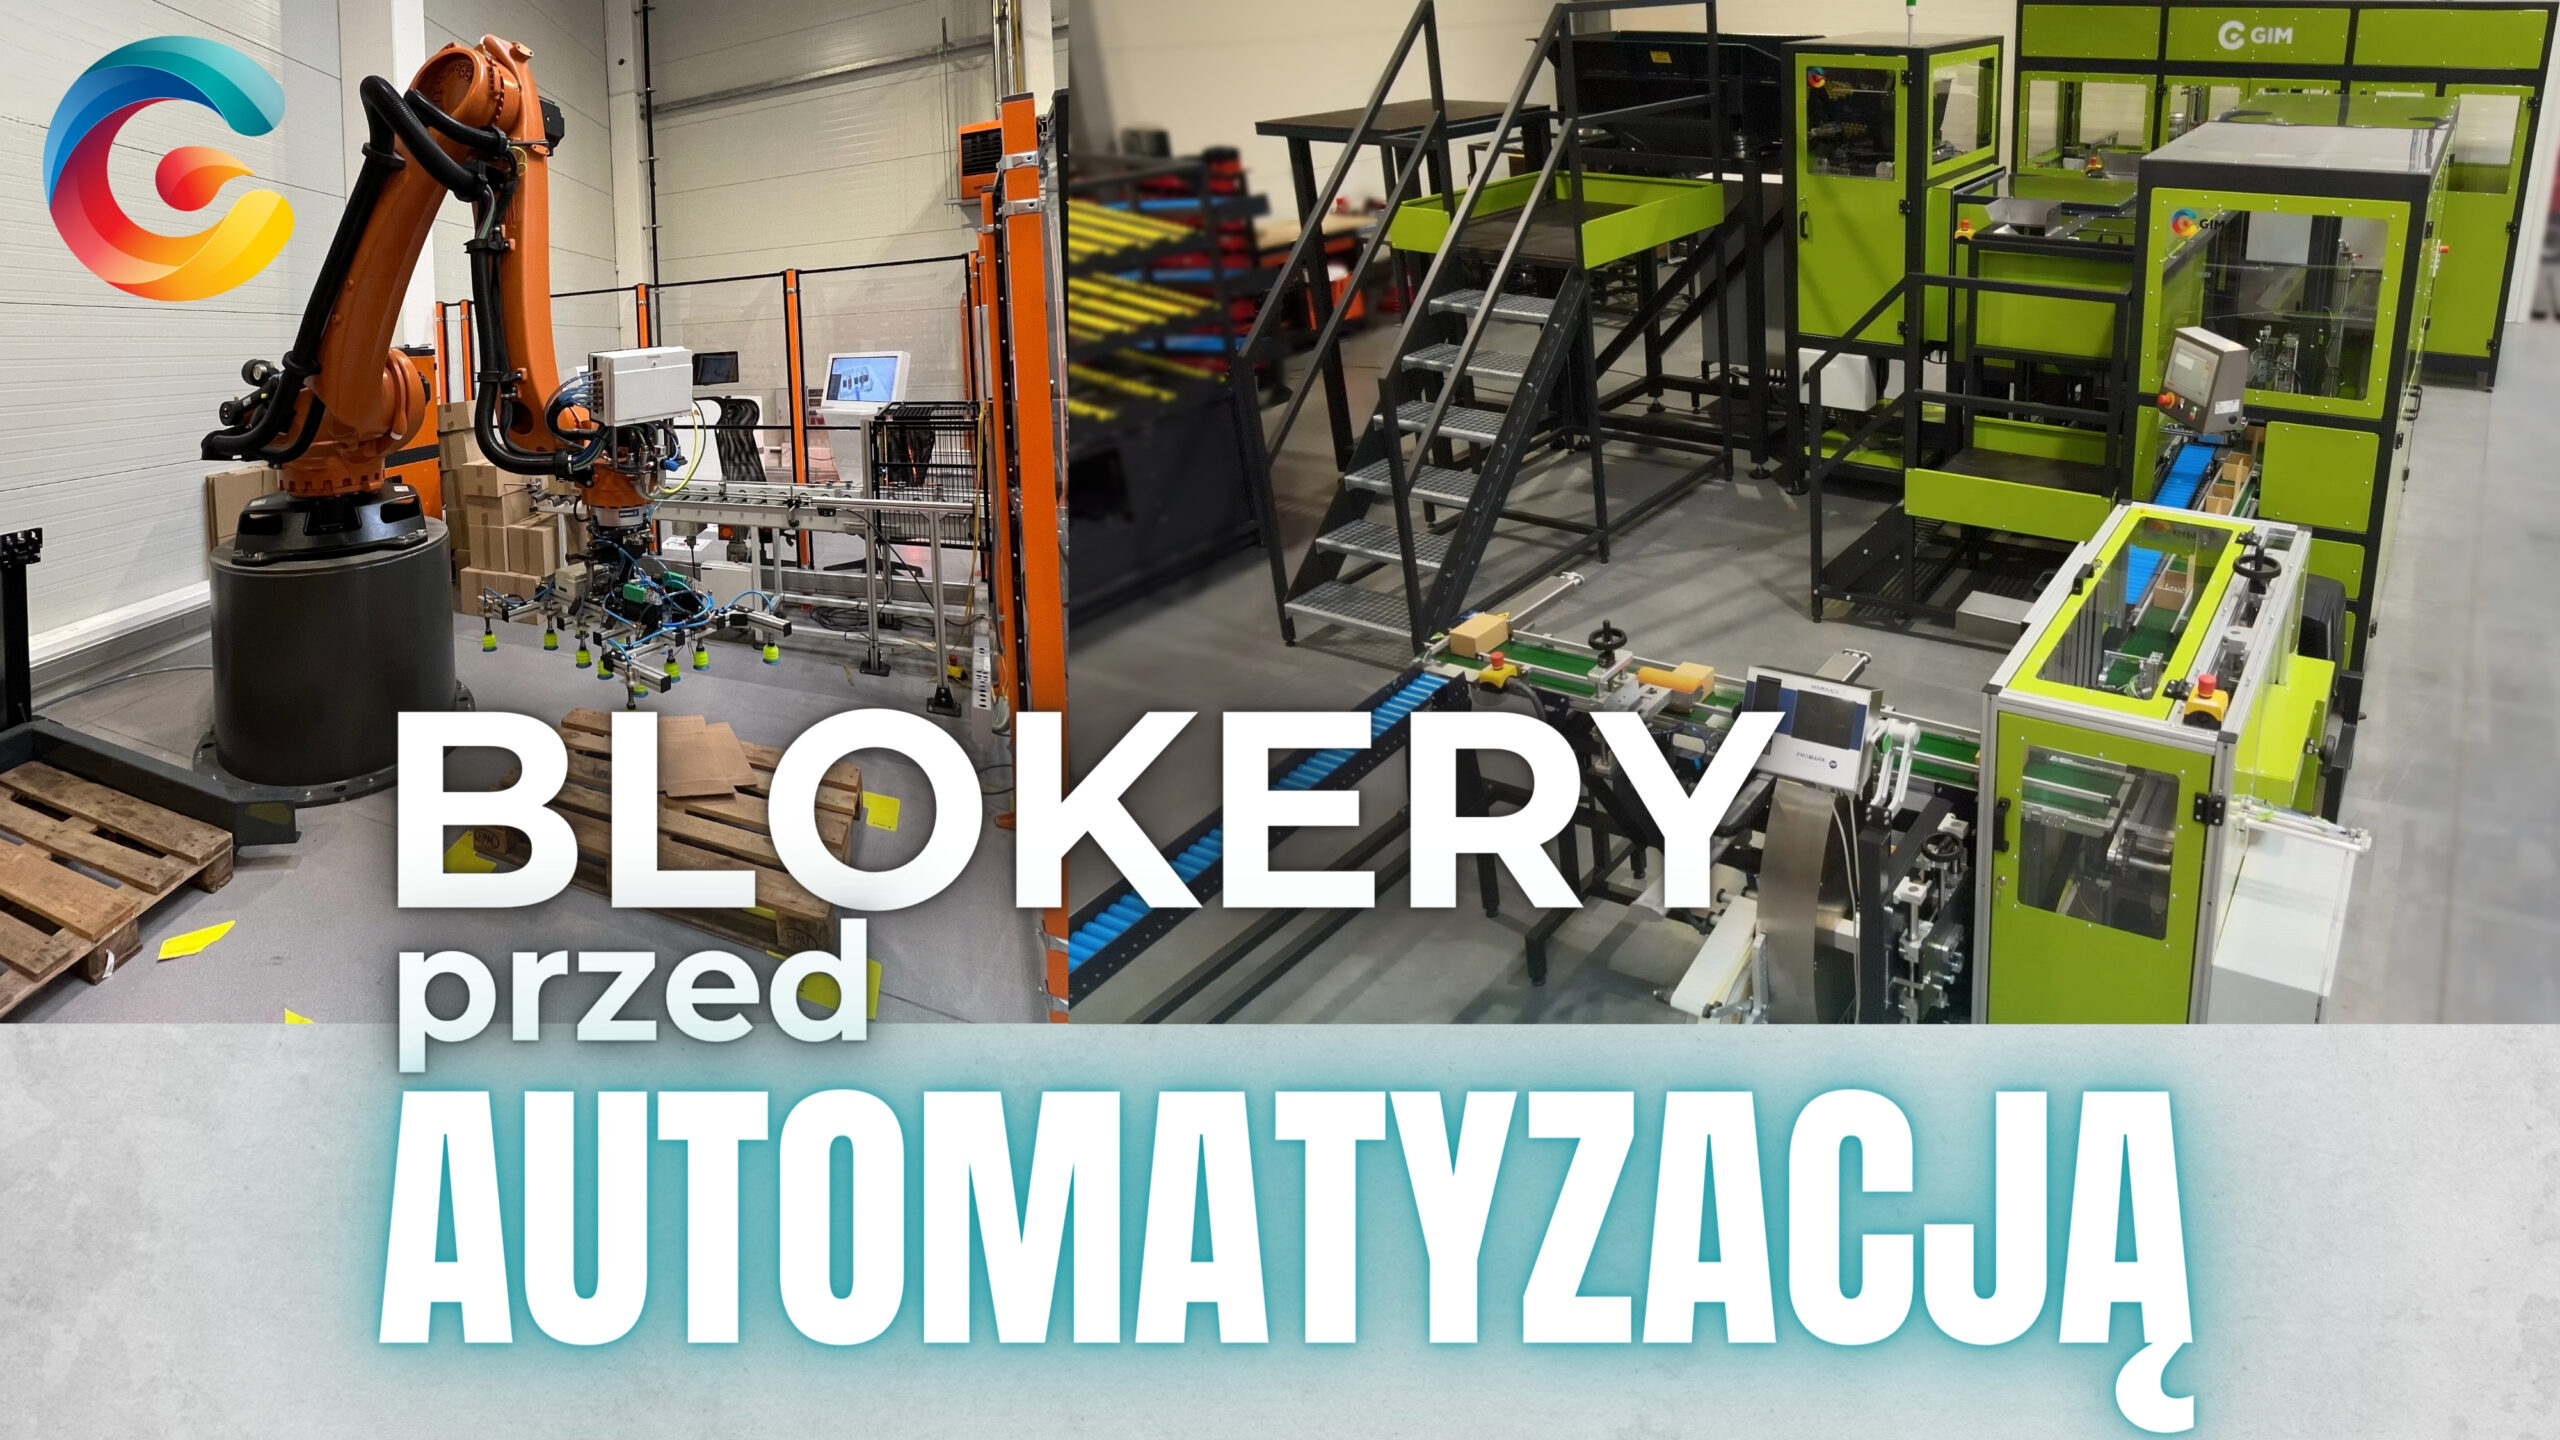 Automatyzacja procesów produkcyjnych zapewnia zaawansowane rozwiązania zautomatyzowania całej linii produkcyjnej